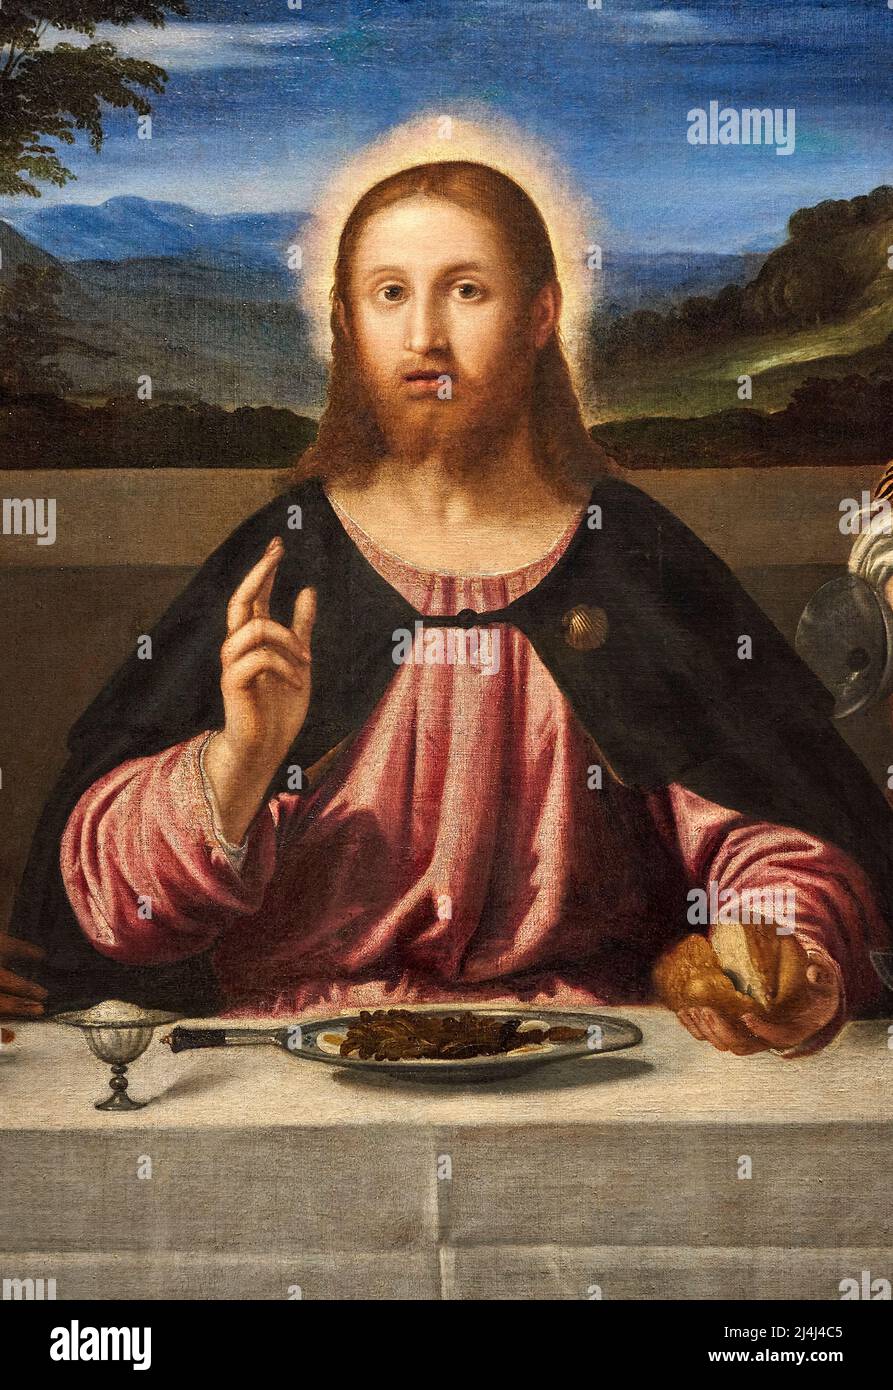 particolare da “ Cena in Emmaus “ - olio su tela - Simone Peterzano - 15765 - Firenze, Galleria Palatina di Palazzo Pitti Stock Photo